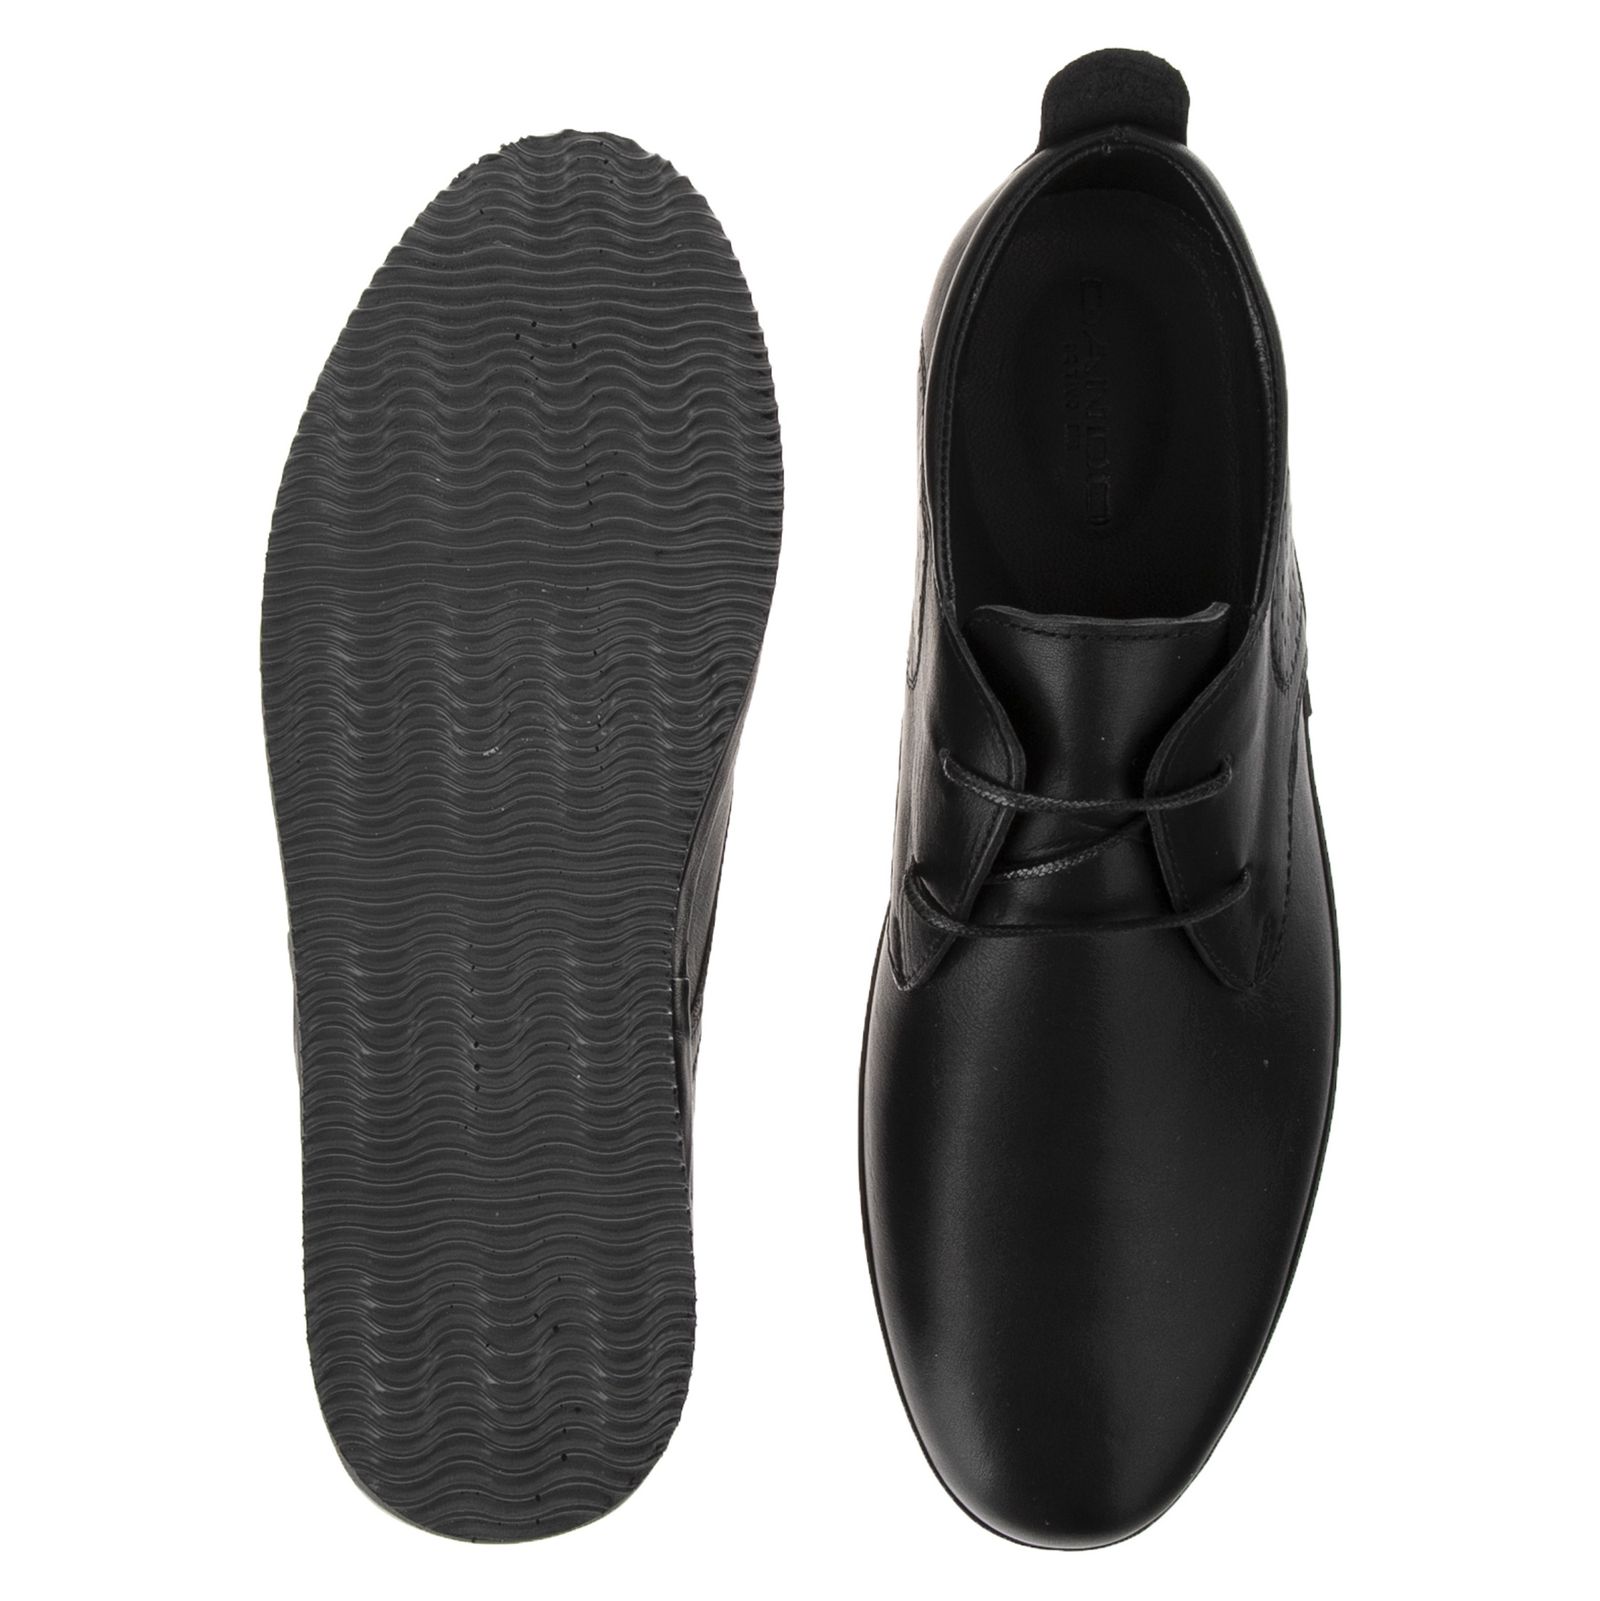 کفش روزمره مردانه گاندو مدل 99-703 - مشکی - 6